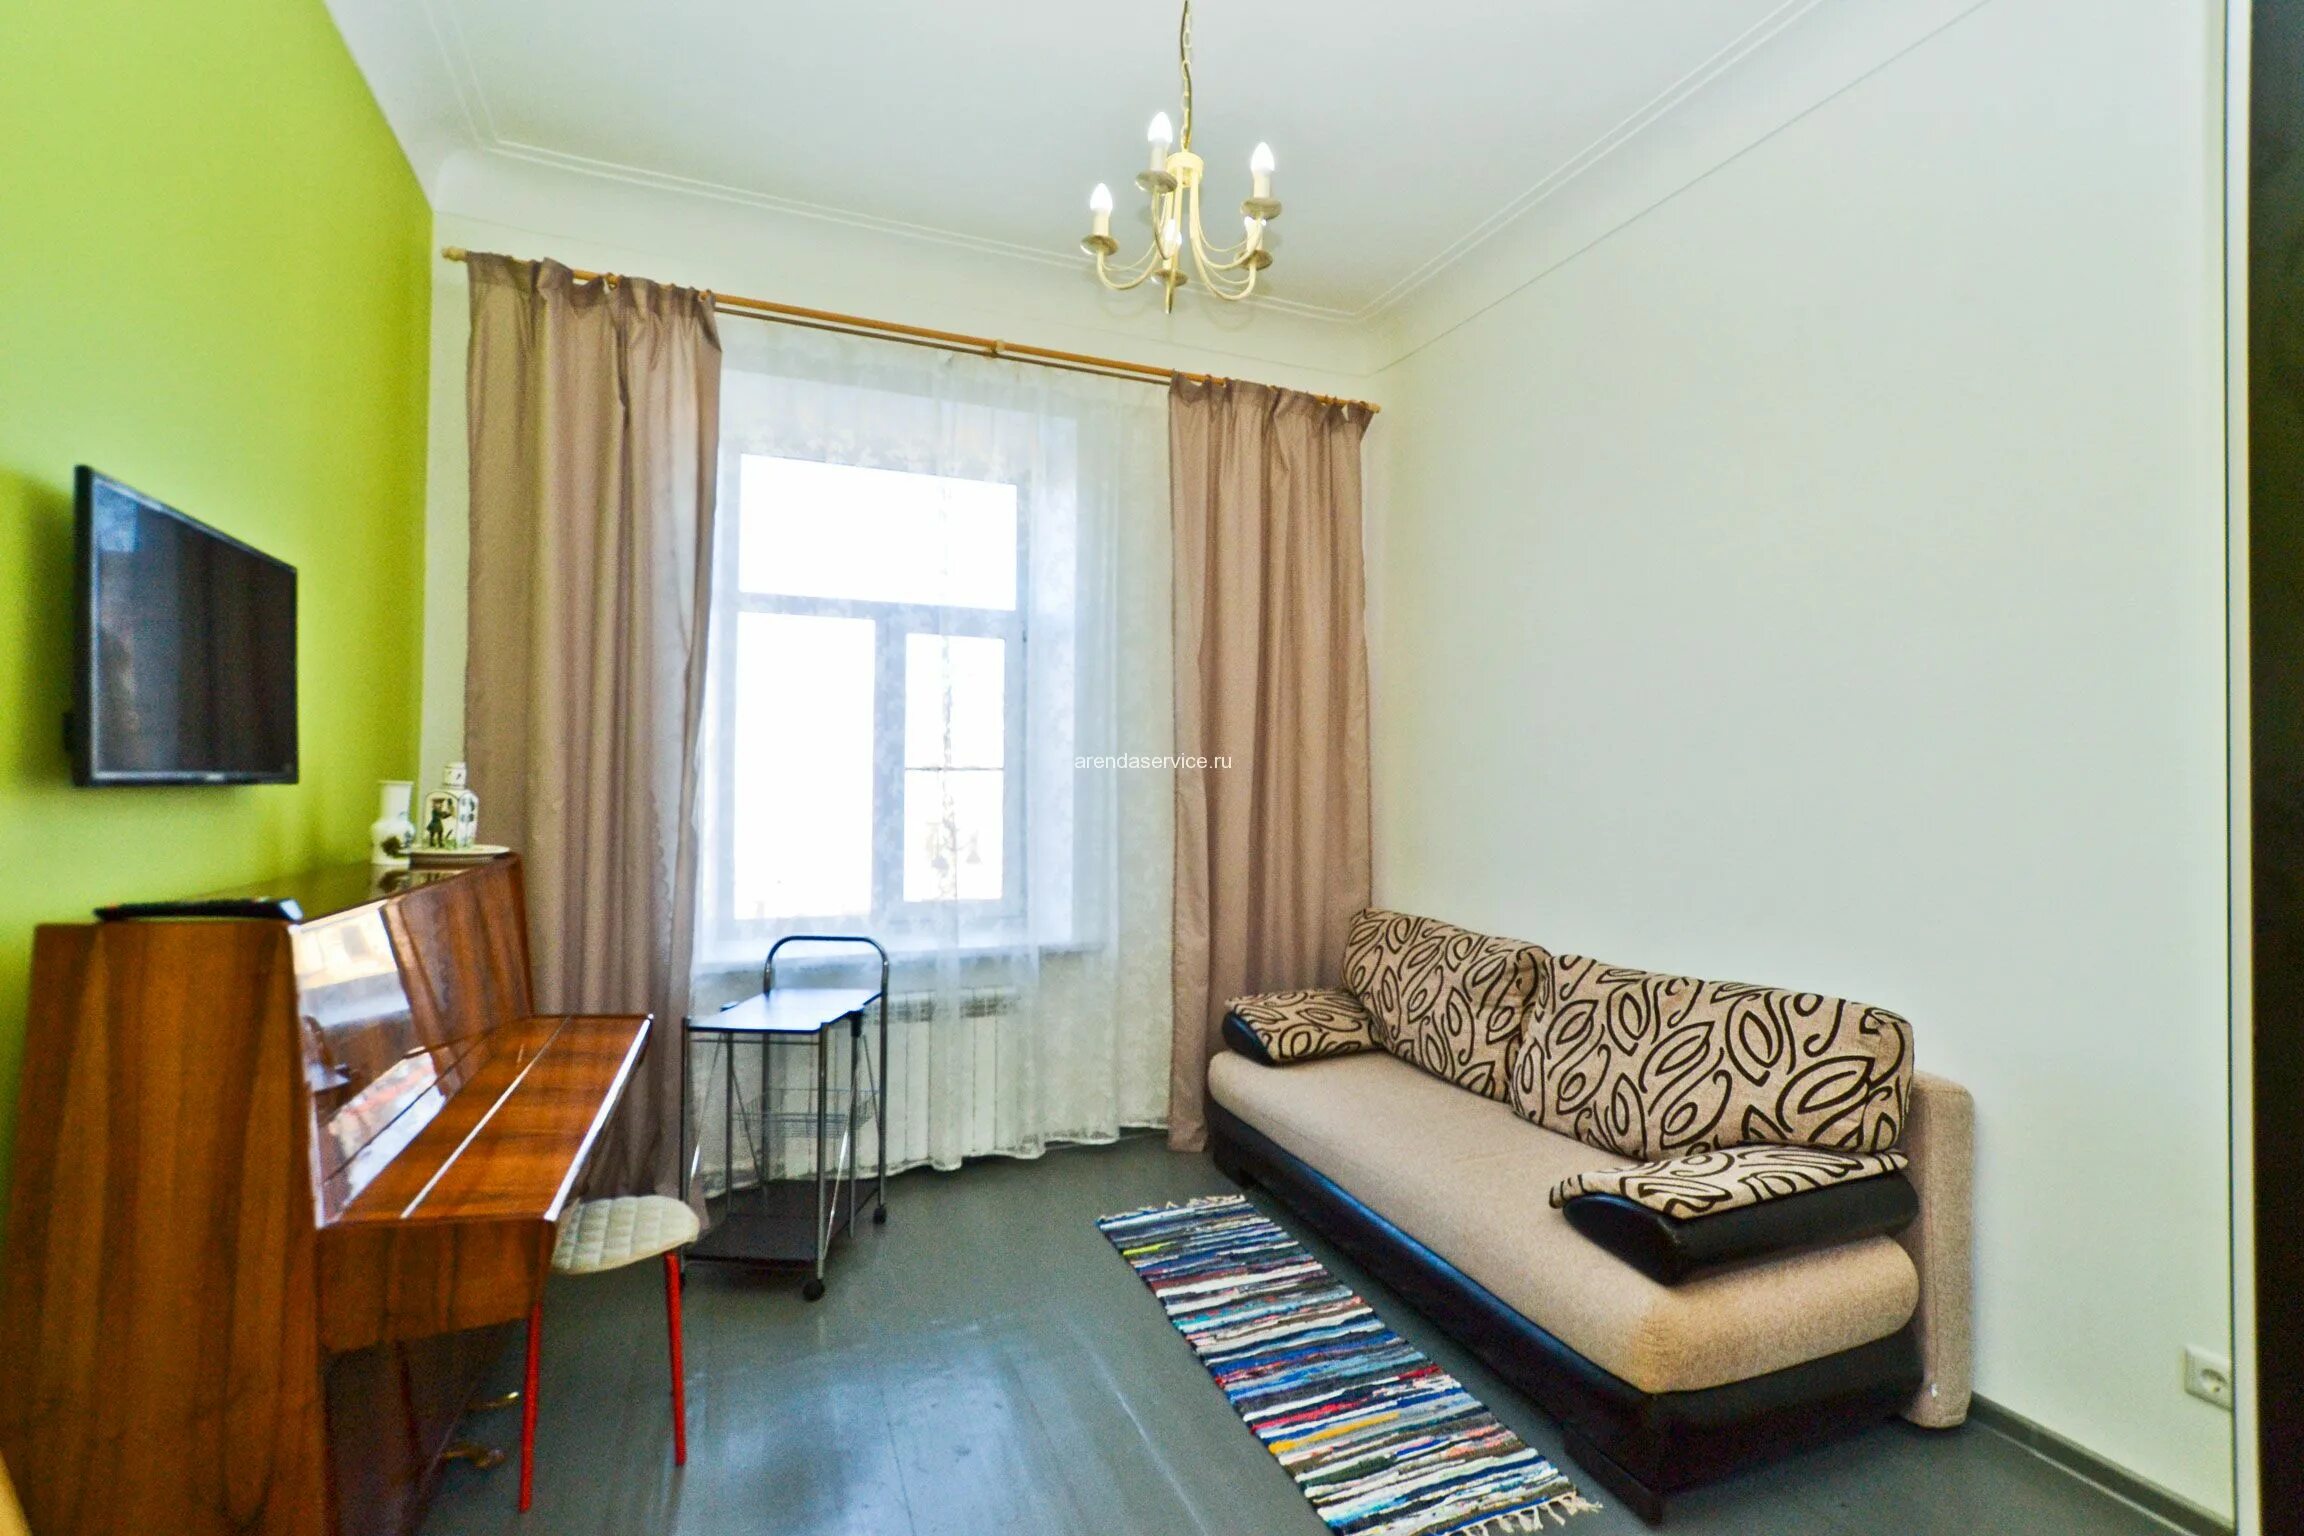 Островок снять квартиру в санкт петербурге посуточно. Квартира на Невском проспекте 1 комнатная. Апартаменты Питер снять посуточно однокомнатная.